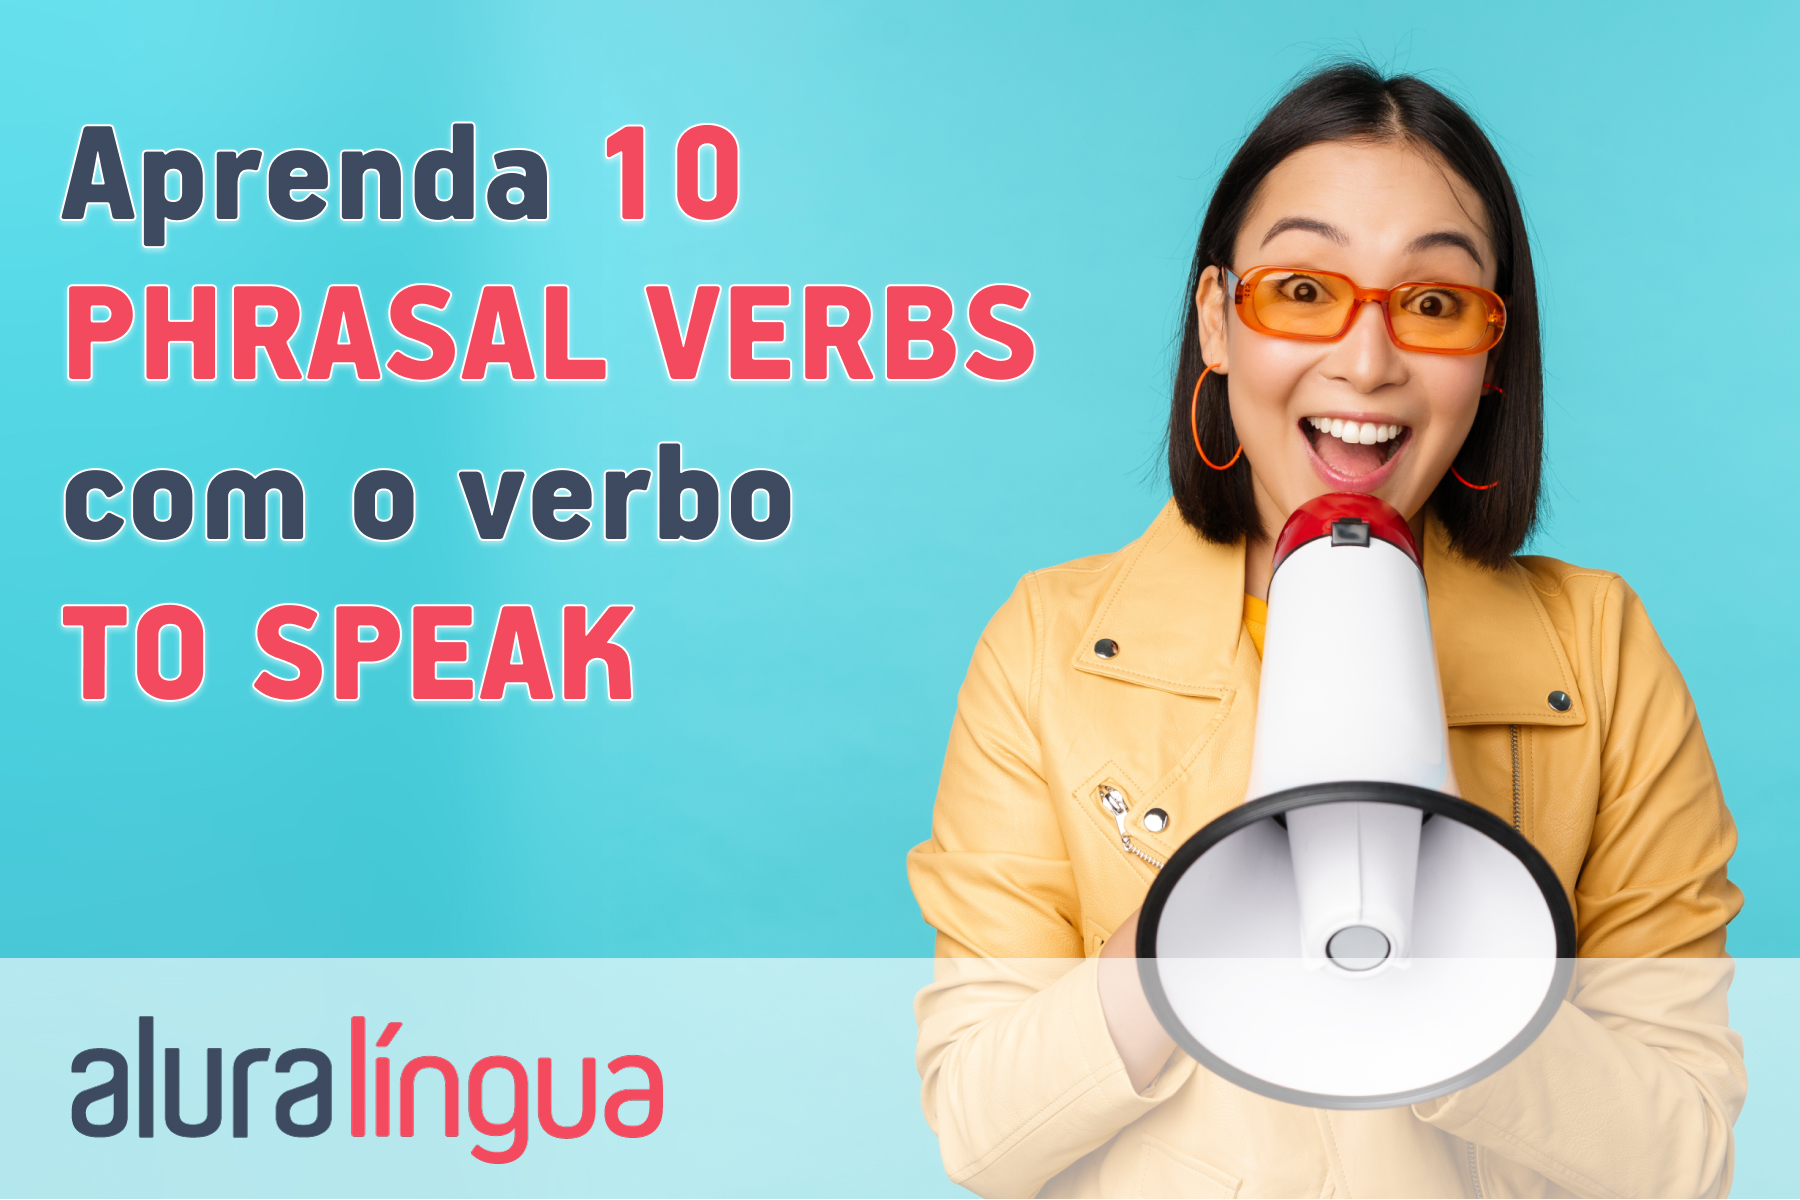 Aprenda 10 phrasal verbs com o verbo to speak #inset